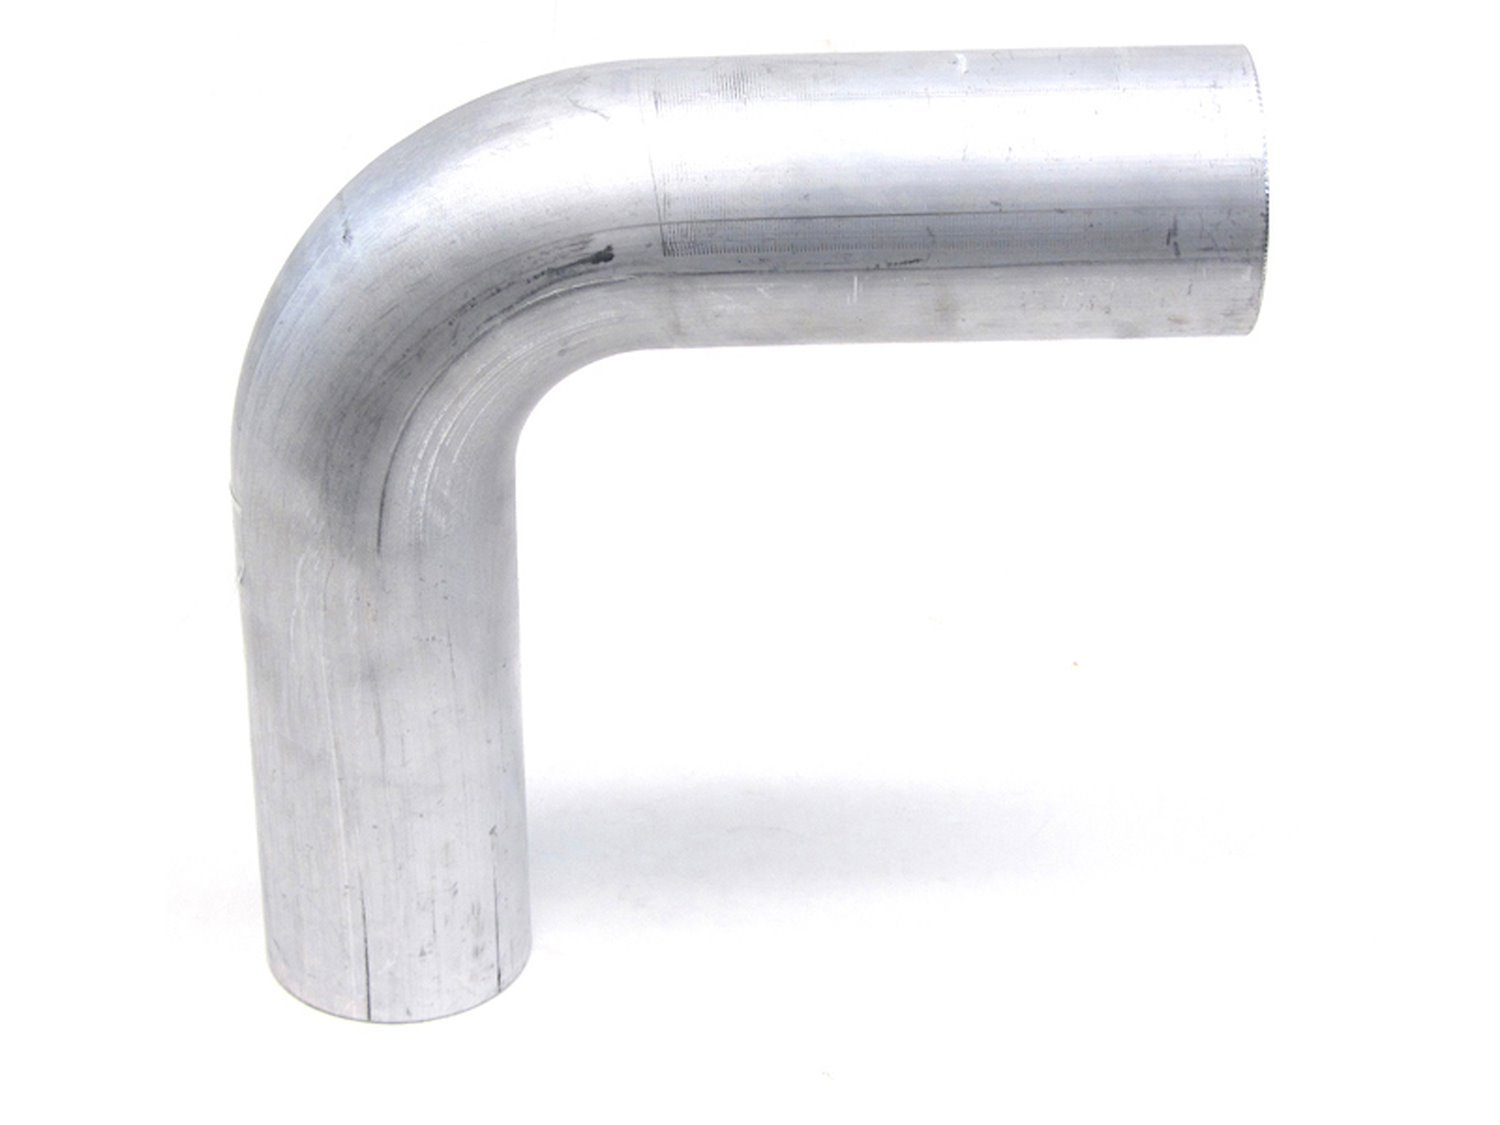 AT90-150-CLR-3 Aluminum Elbow Tube, 6061 Aluminum, 90-Degree Bend Elbow Tubing, 1-1/2 in. OD, Large Radius, 3 in. CLR